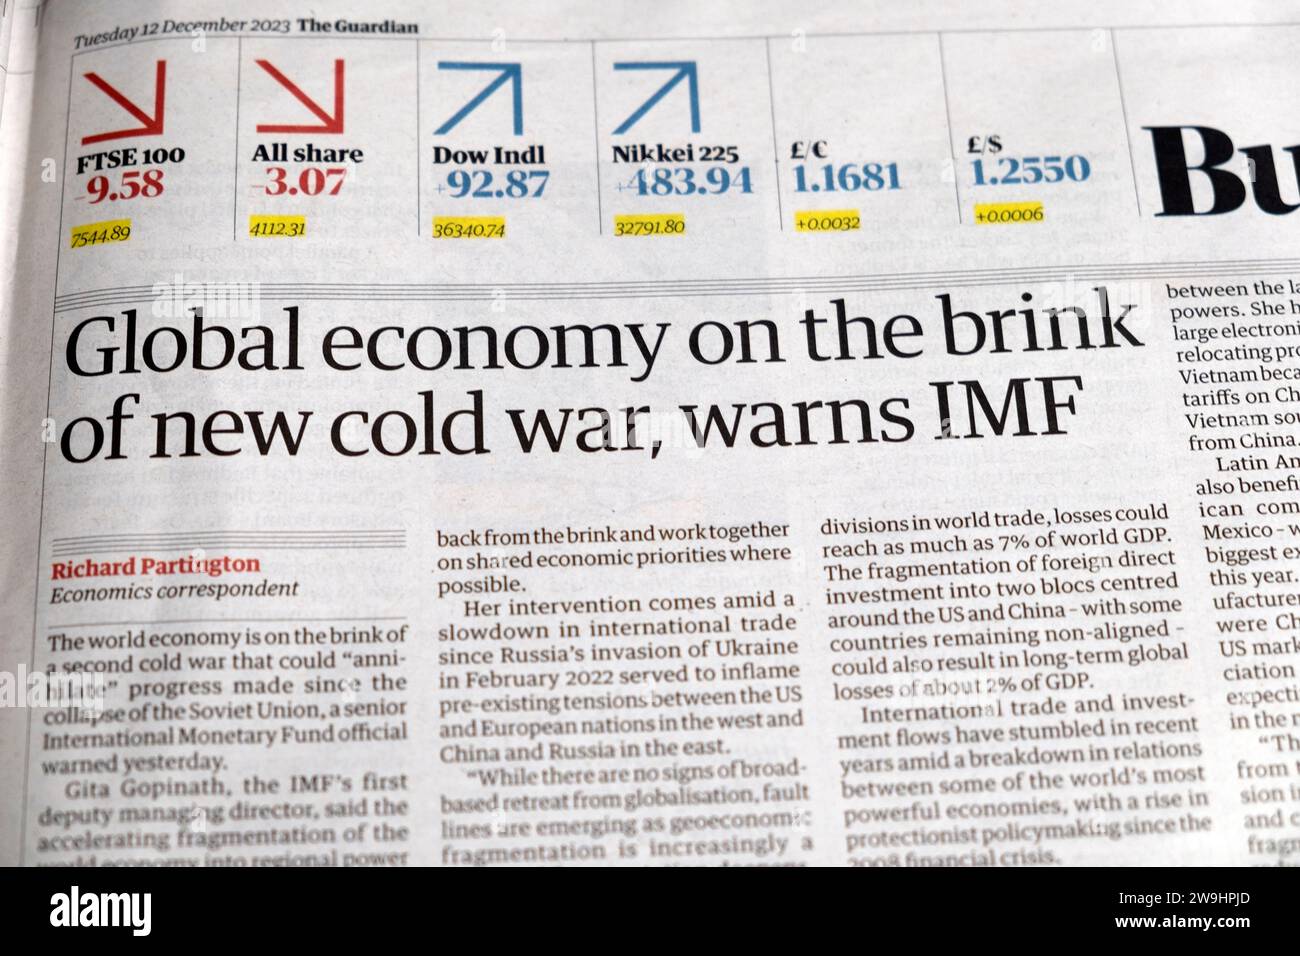 "Weltwirtschaft am Rande eines neuen Kalten Krieges, warnt IWF' Guardian Zeitung Schlagzeile Finanznachrichten artikel 12 Dezember 2023 London Großbritannien Großbritannien Stockfoto